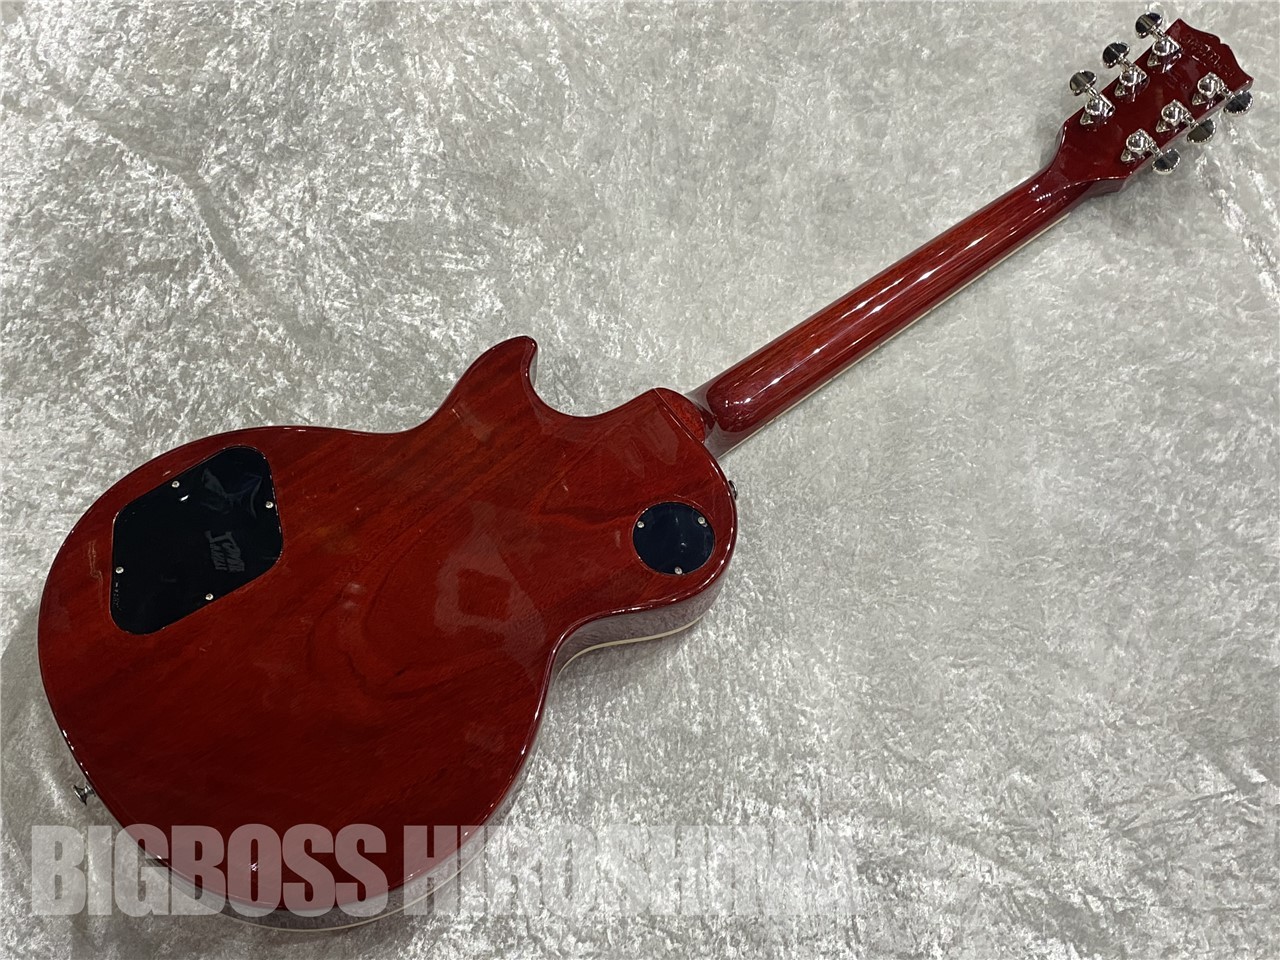 【即納可能】GIBSON(ギブソン)Gibson Les Paul Standard 60s' (Tomato Soup Burst) 広島店